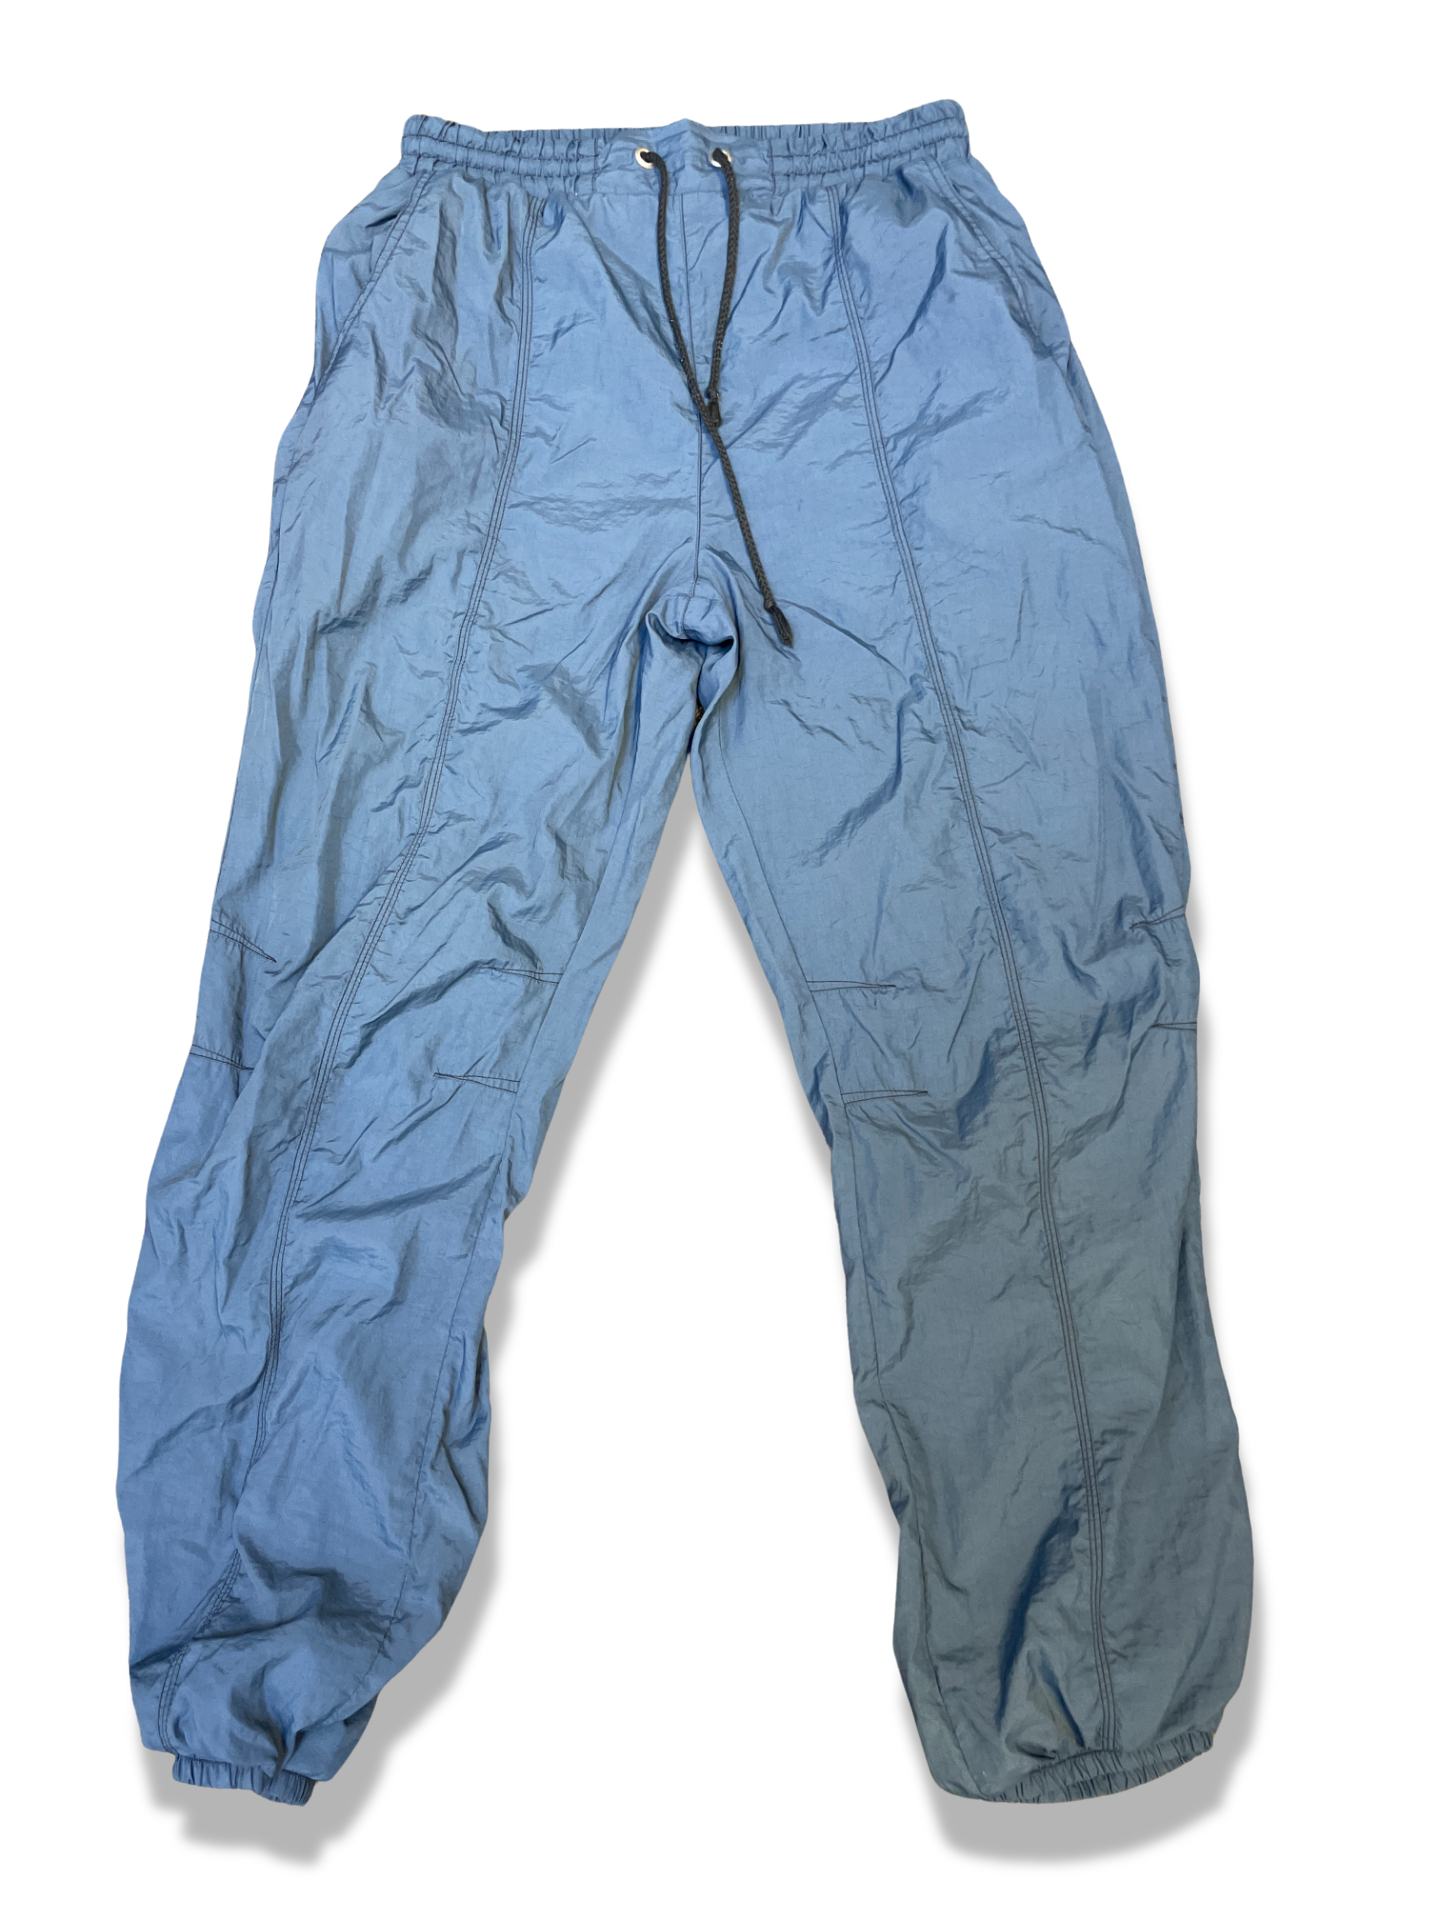 Vintage blue waterproof pant size M